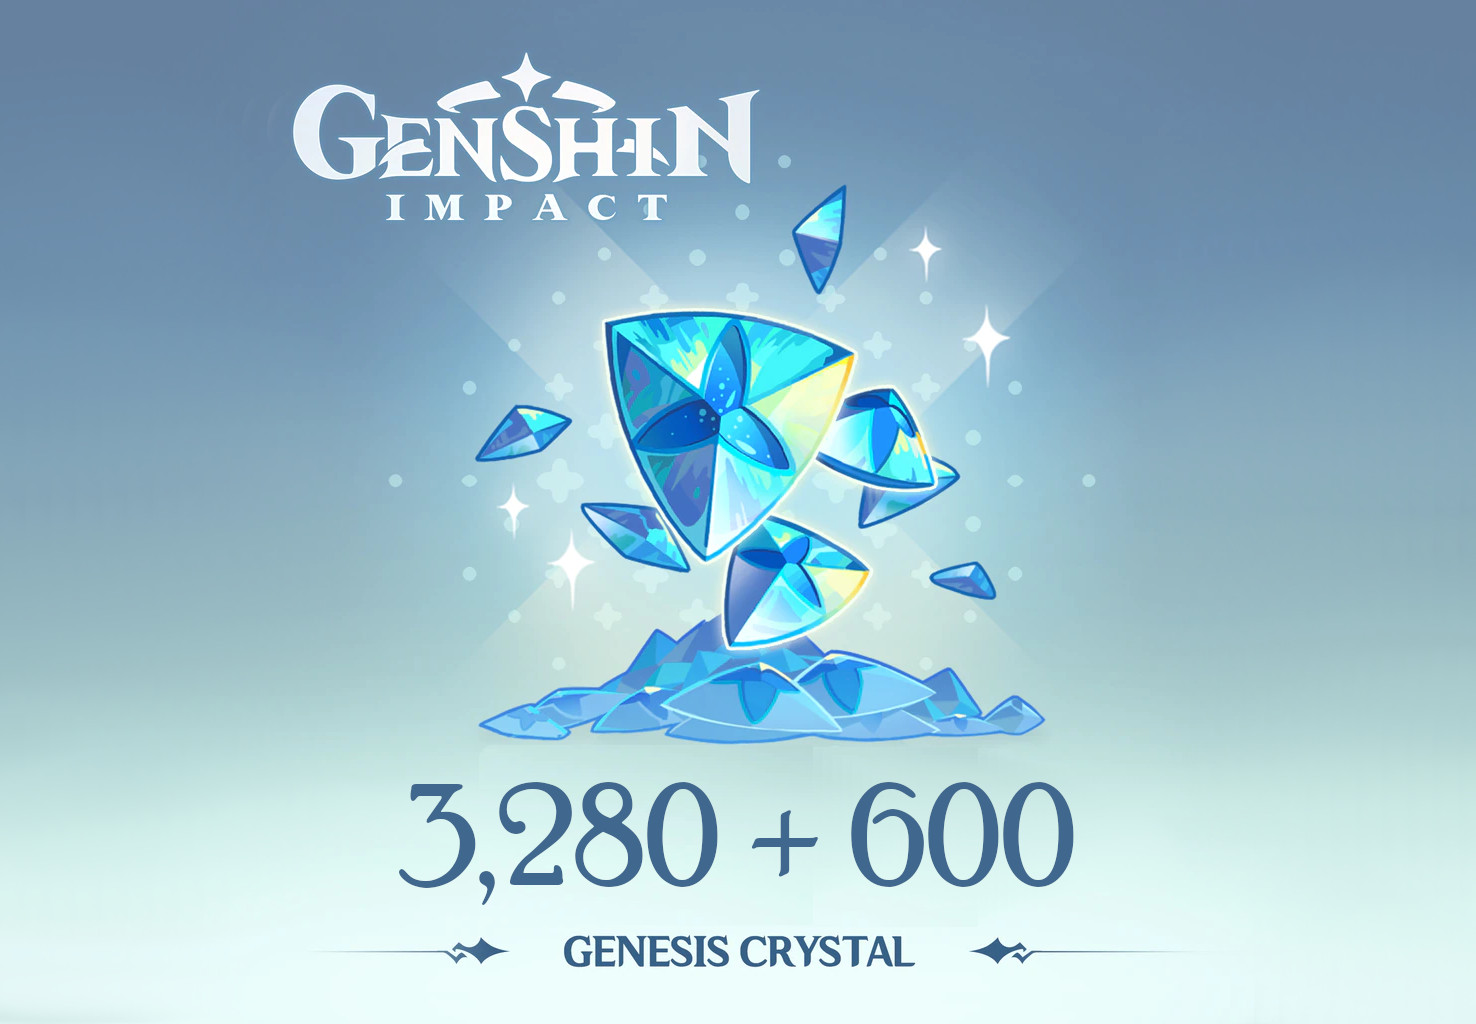 Genshin Impact - 3,280 + 600 Genesis Crystals Reidos Voucher, 53.39 usd